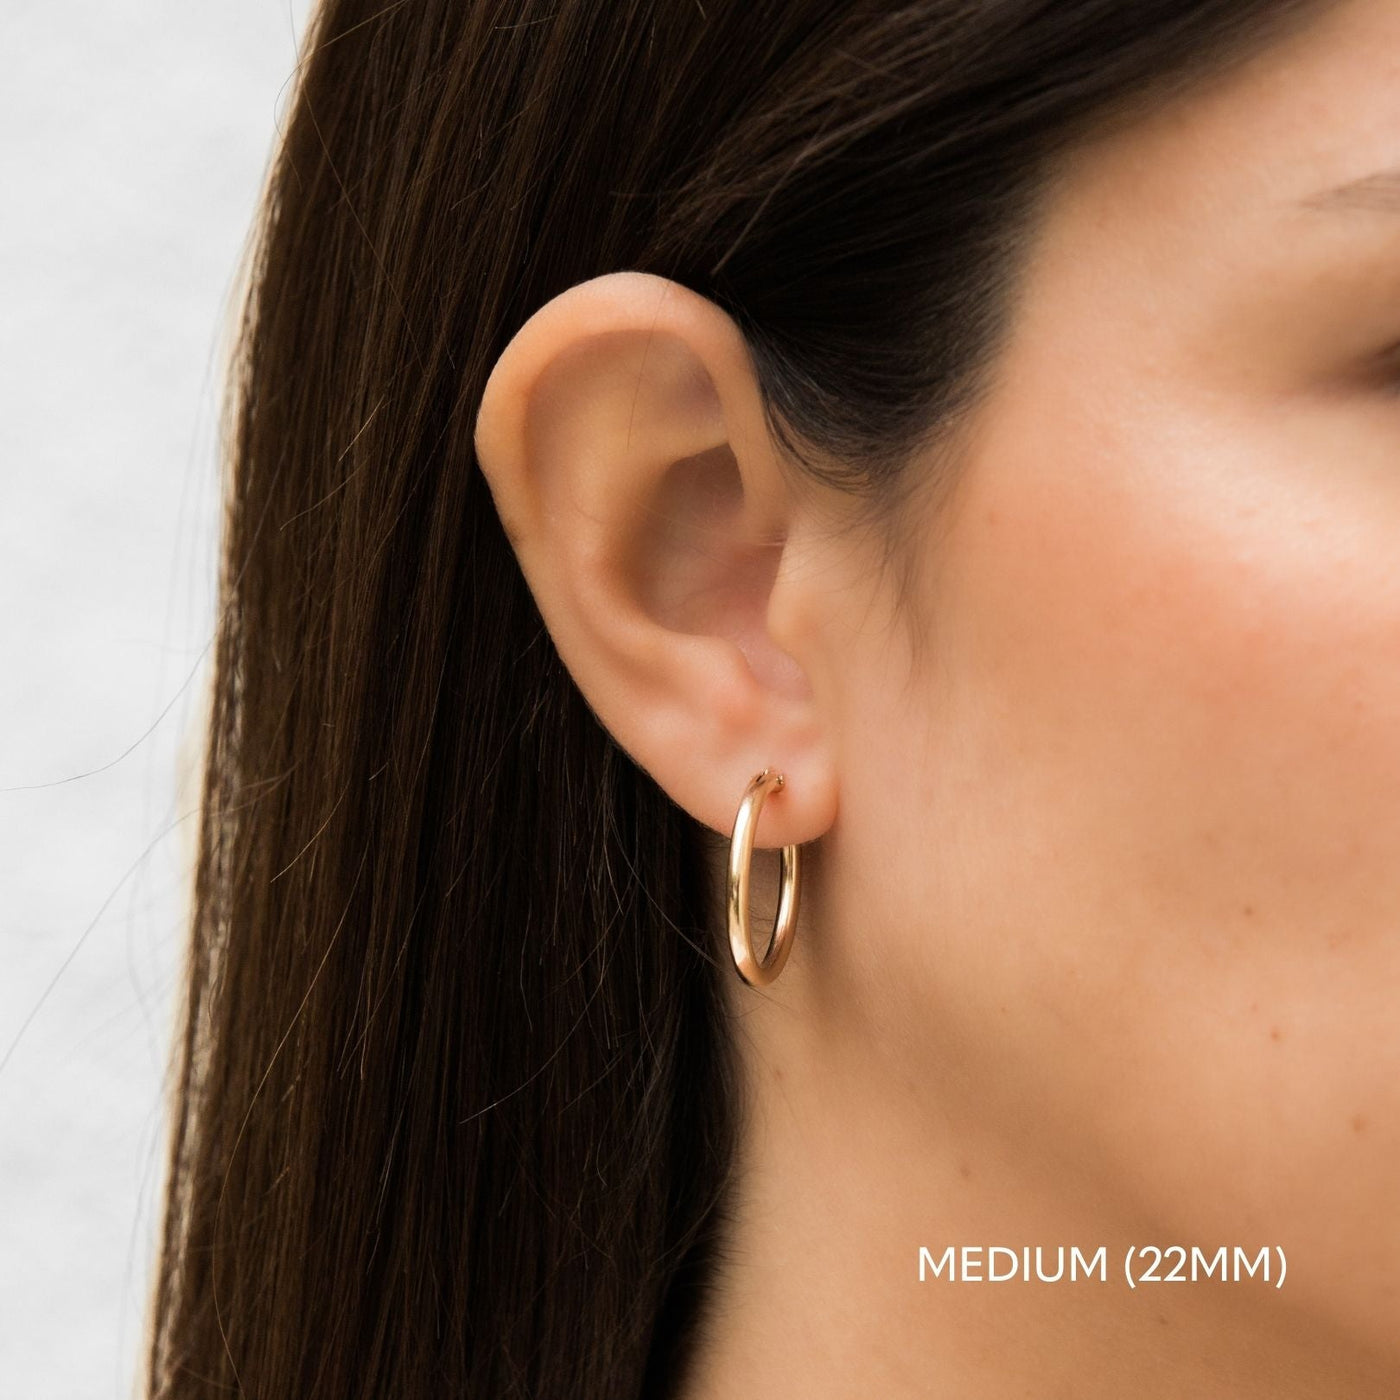 Medium (22mm) Everyday Hoop Earrings by Simple & Dainty Jewelry